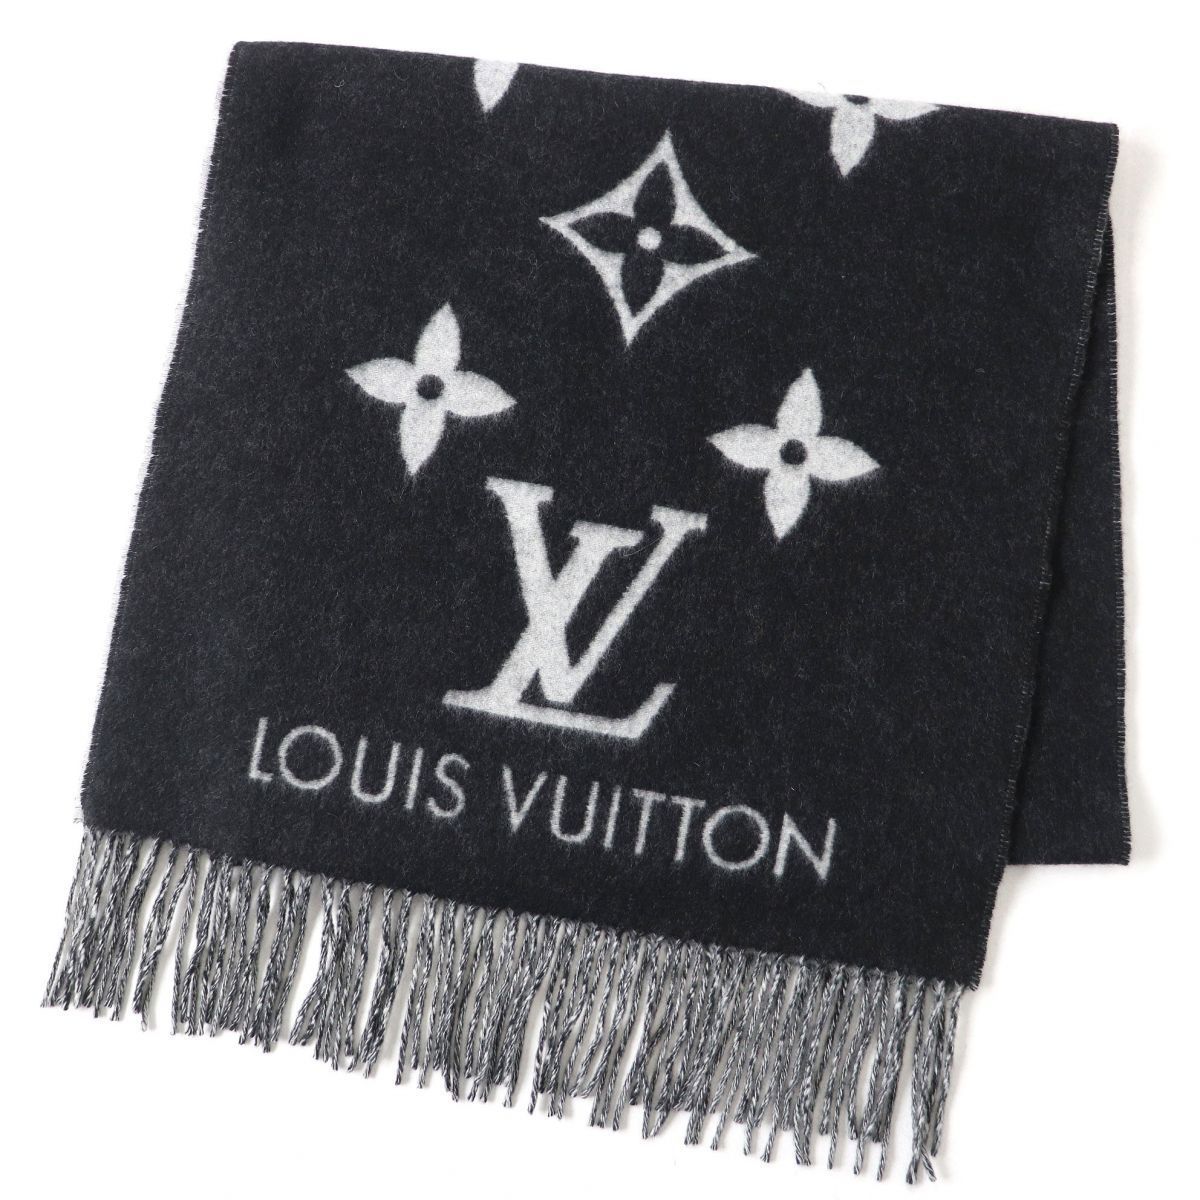 Louis Vuitton Coussin, Khaki Large MM Unboxing